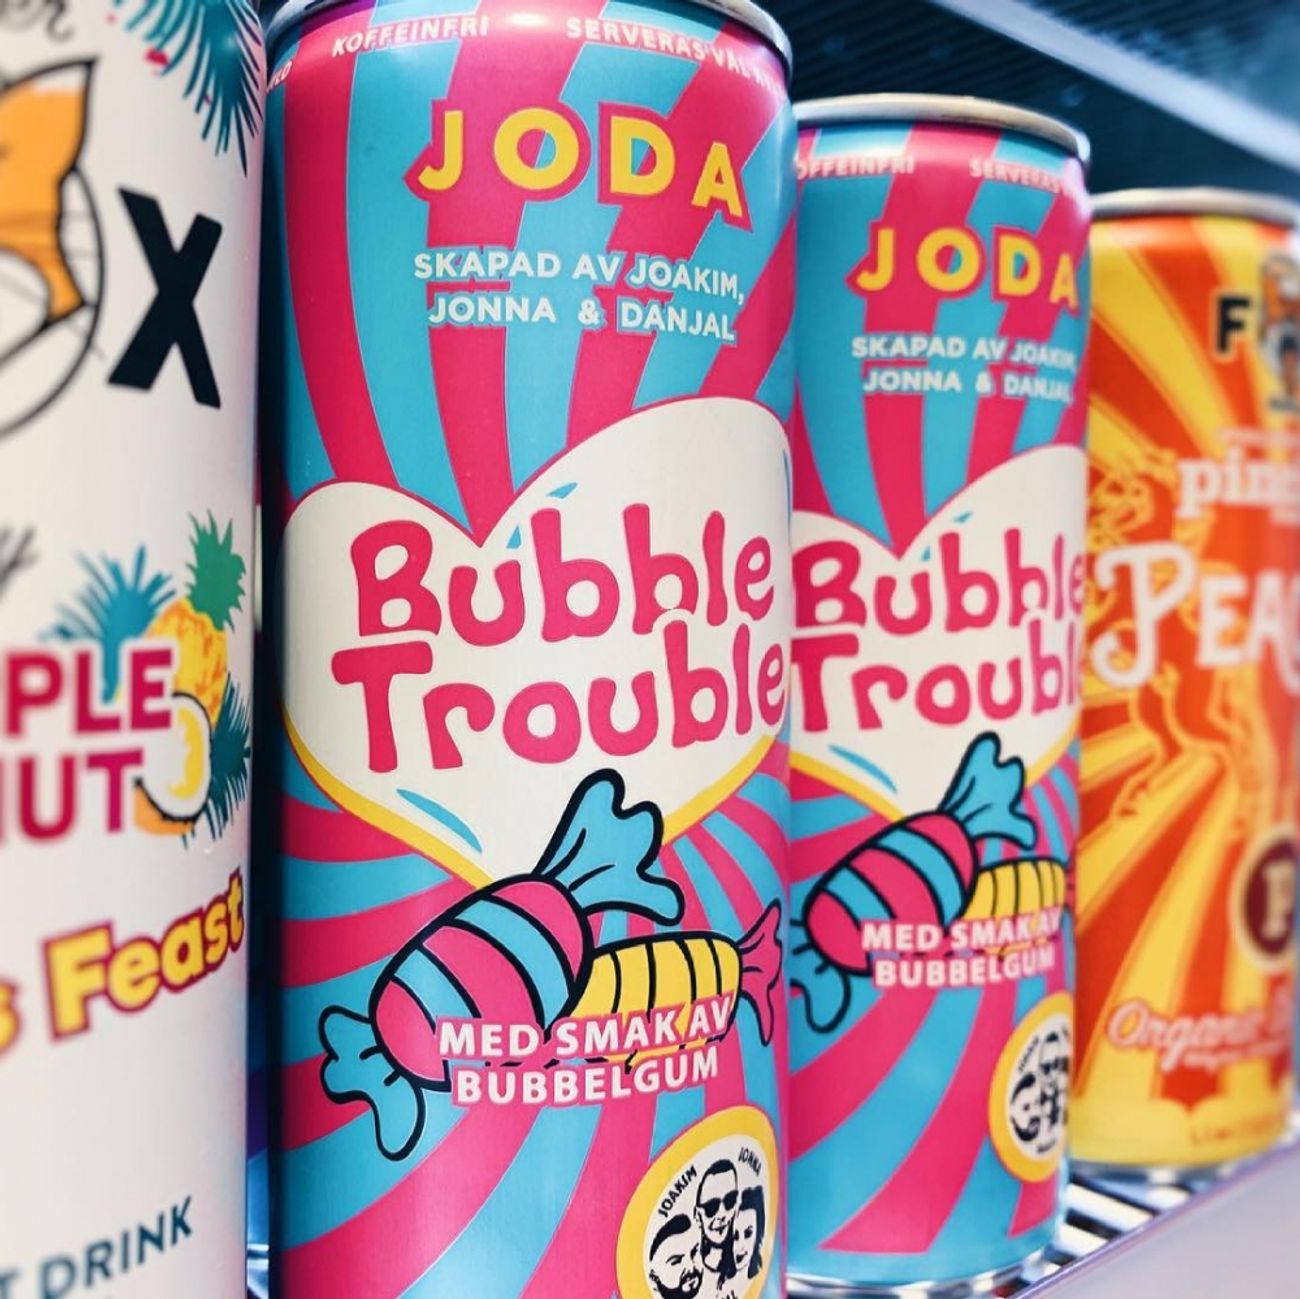 joda-bubble-trouble-energidryck-73224-4